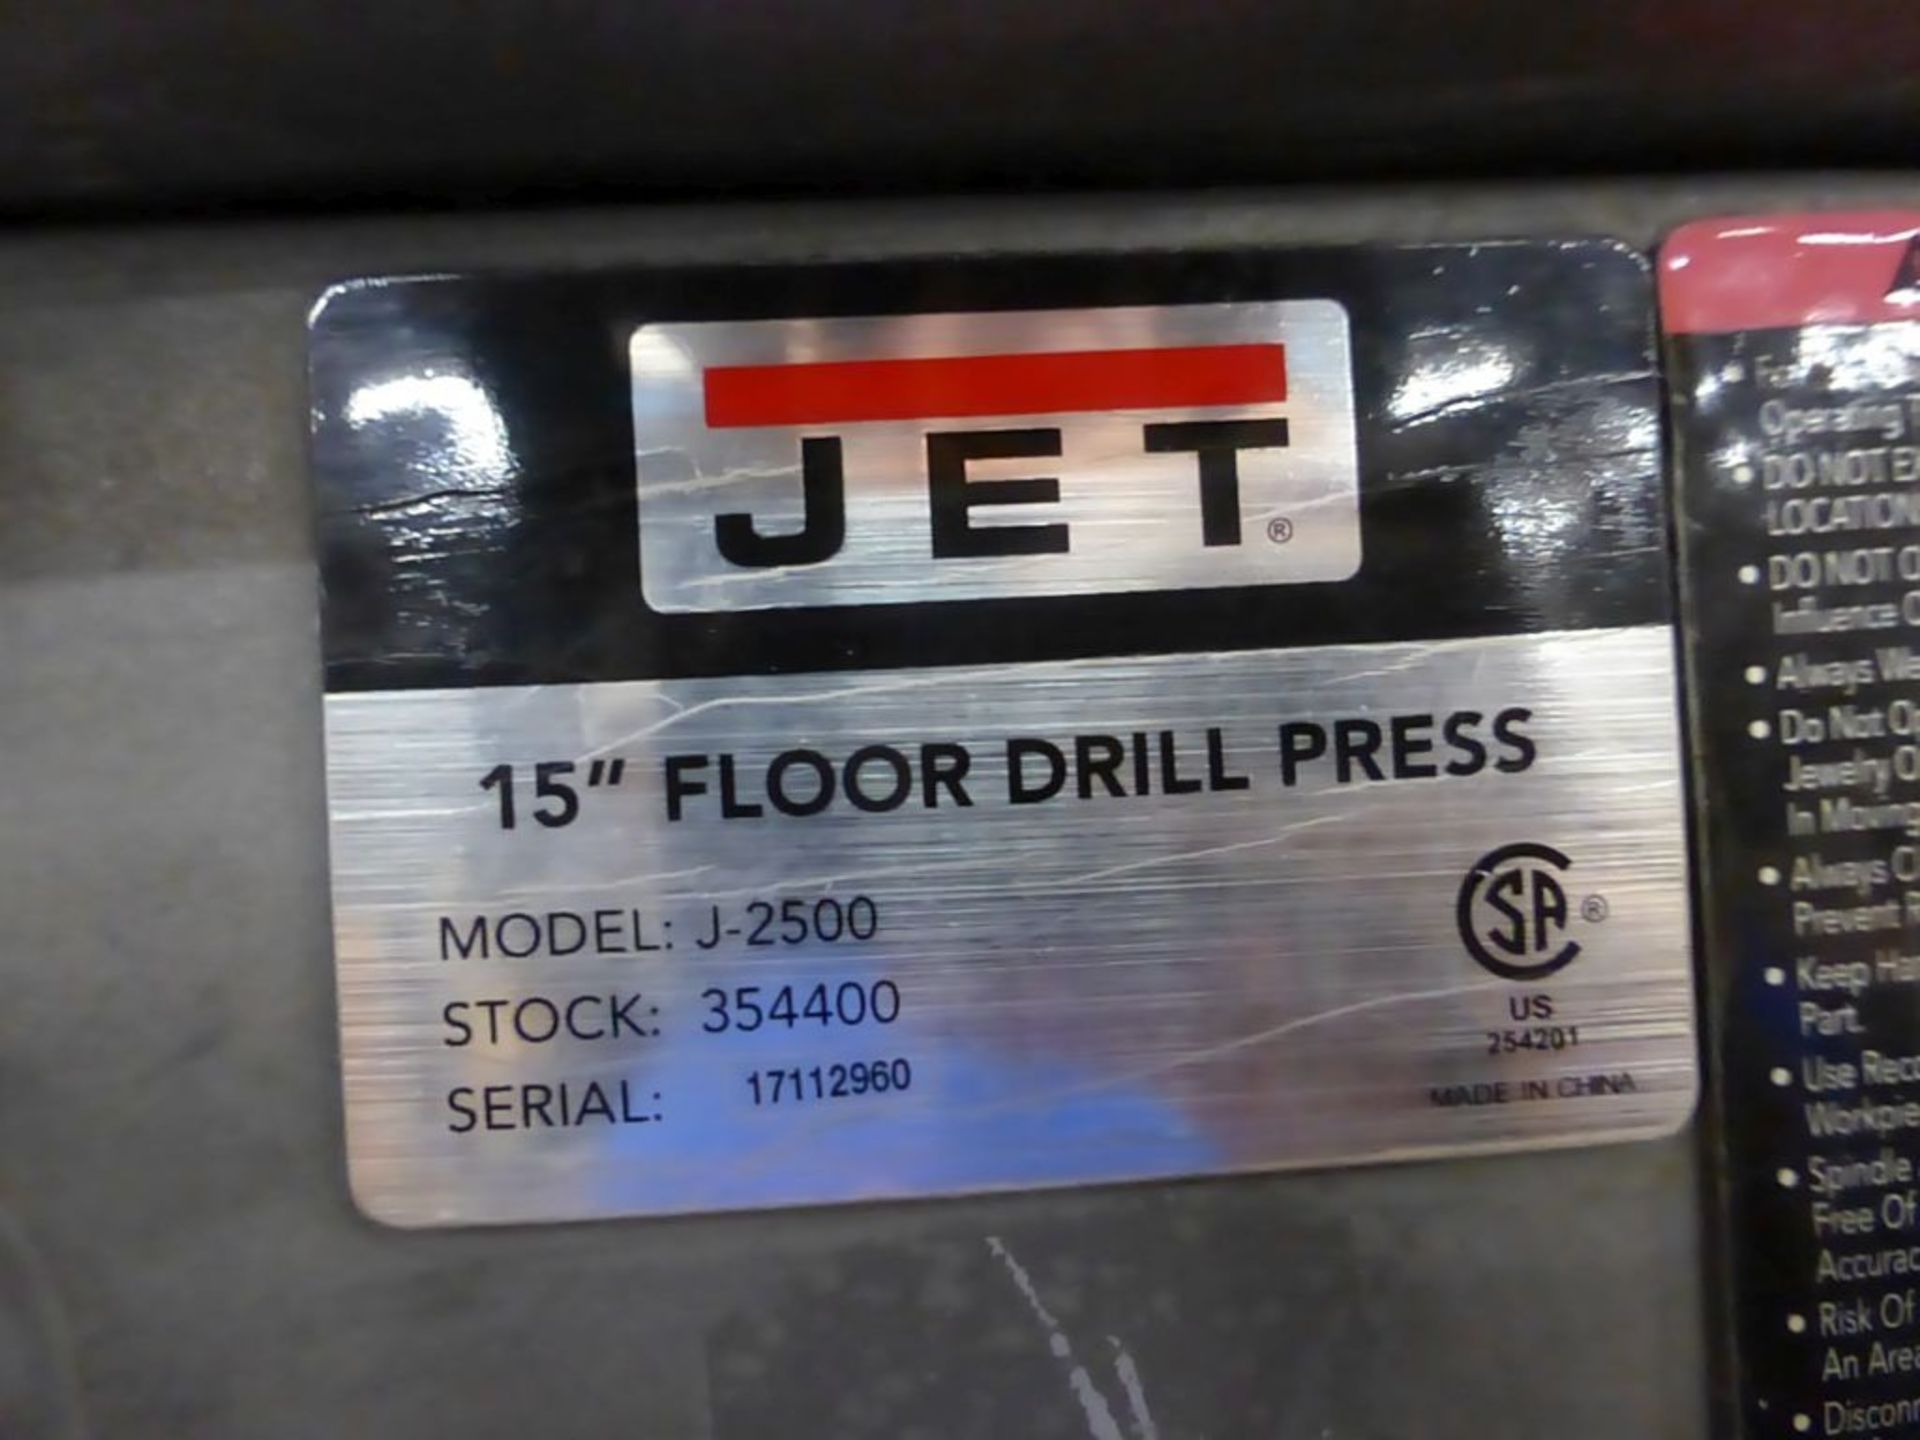 Jet 15" Floor Drill Press | Model No. J-2500; Stock No. 354400; 115/230V; 1PH - Image 6 of 10